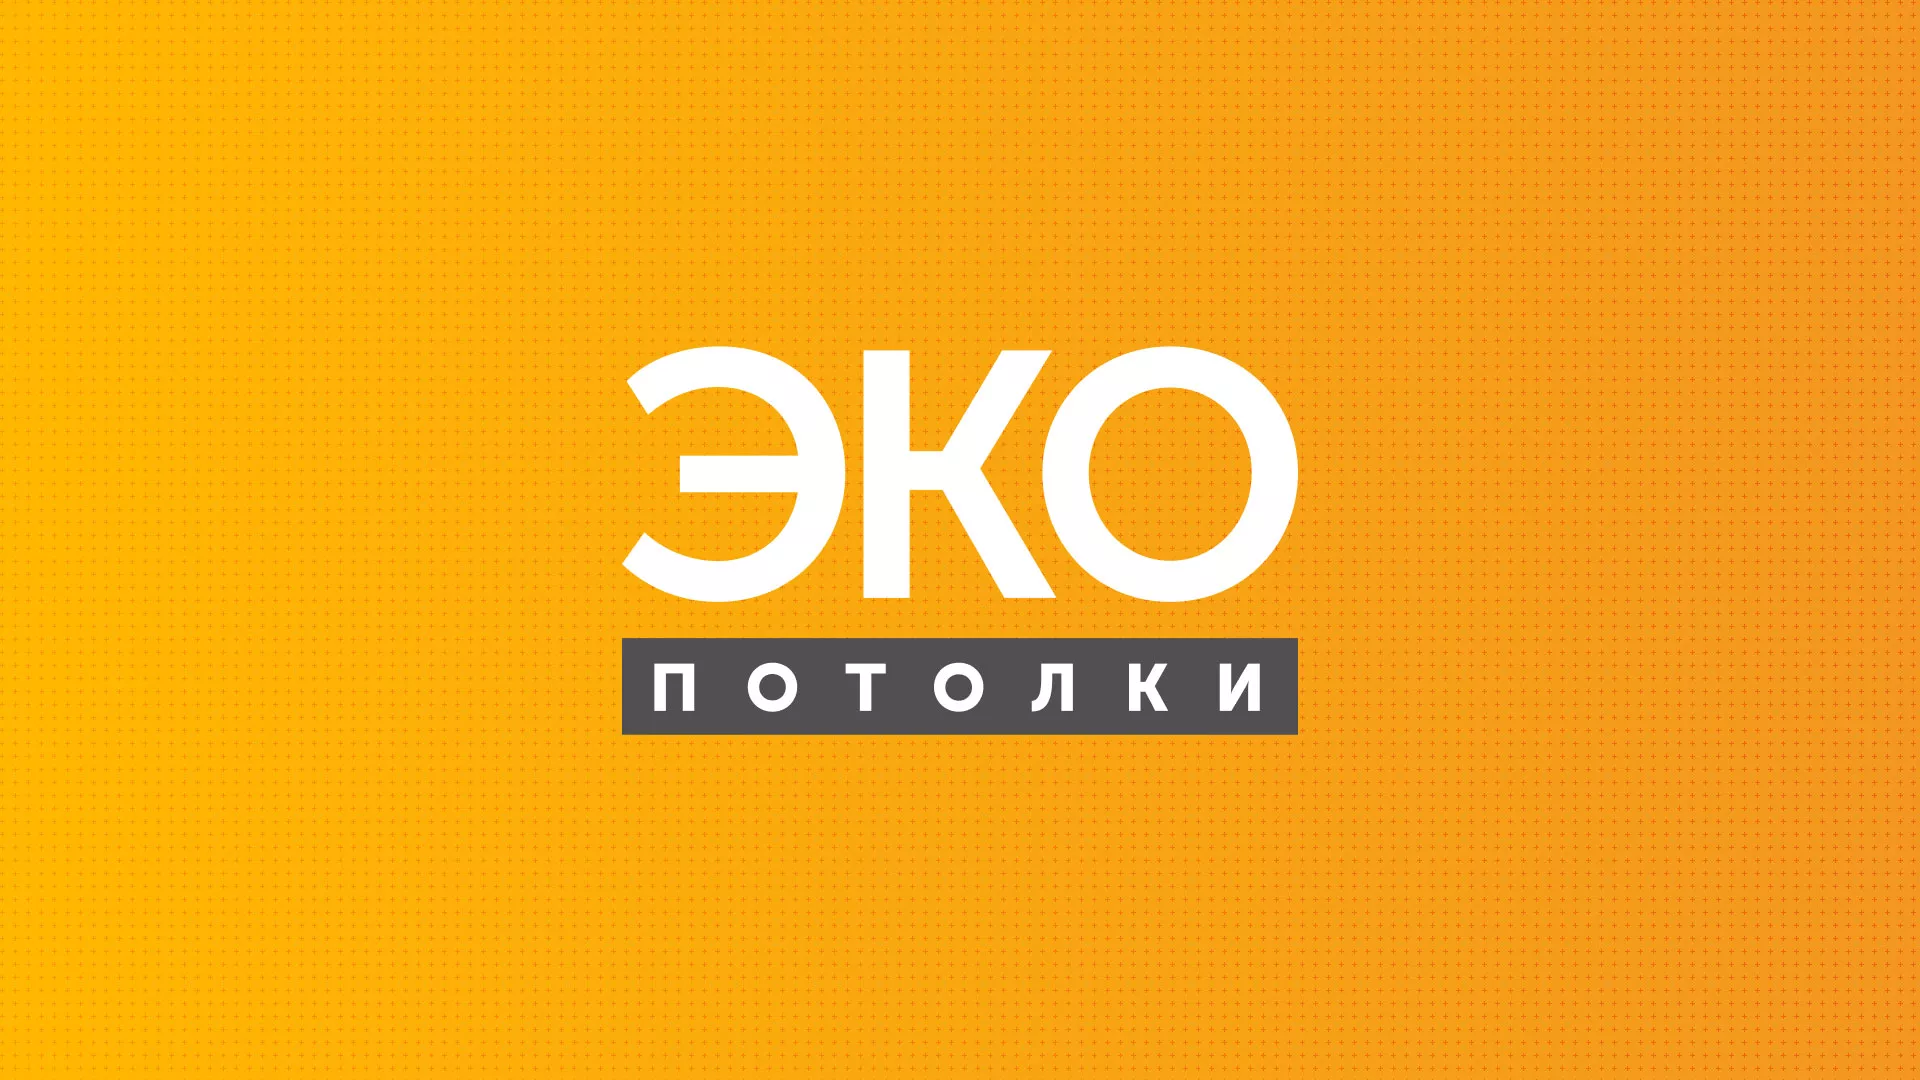 Разработка сайта по натяжным потолкам «Эко Потолки» в Оленегорске